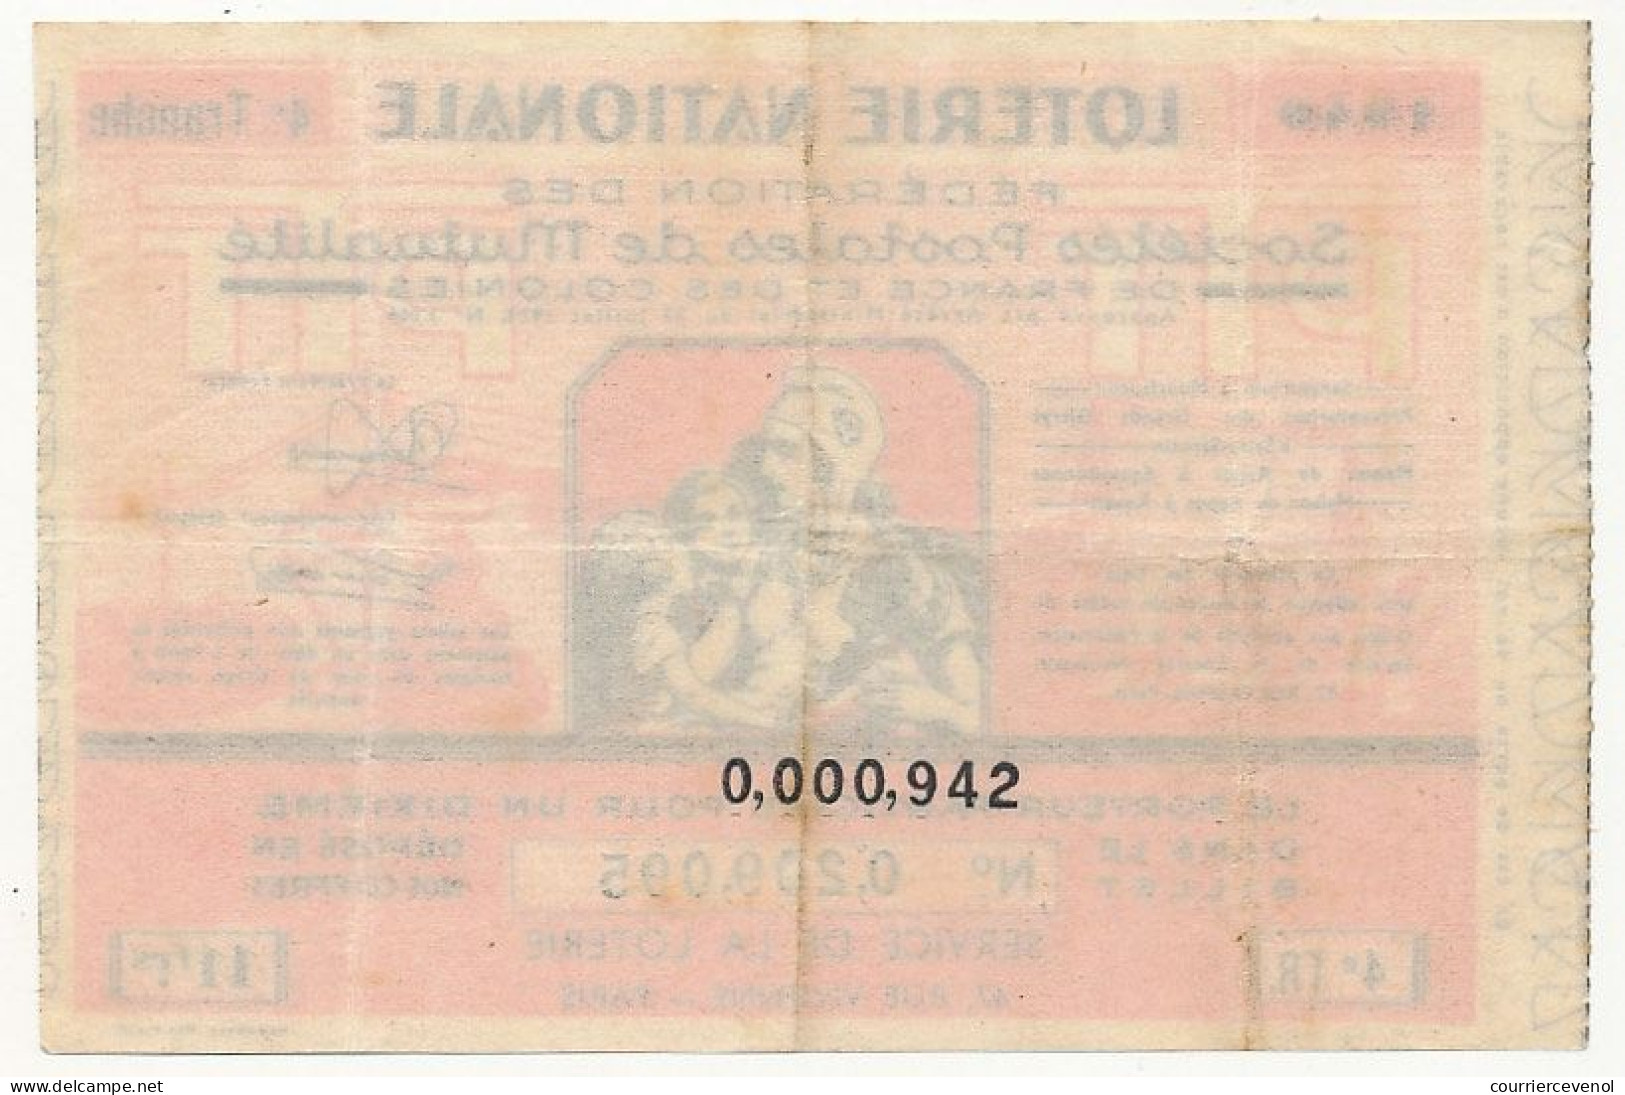 FRANCE - Loterie Nationale - Fédération Des Sociétés Postales De Mutualité - 1/10ème - 4ème Tranche 1940 - Billets De Loterie